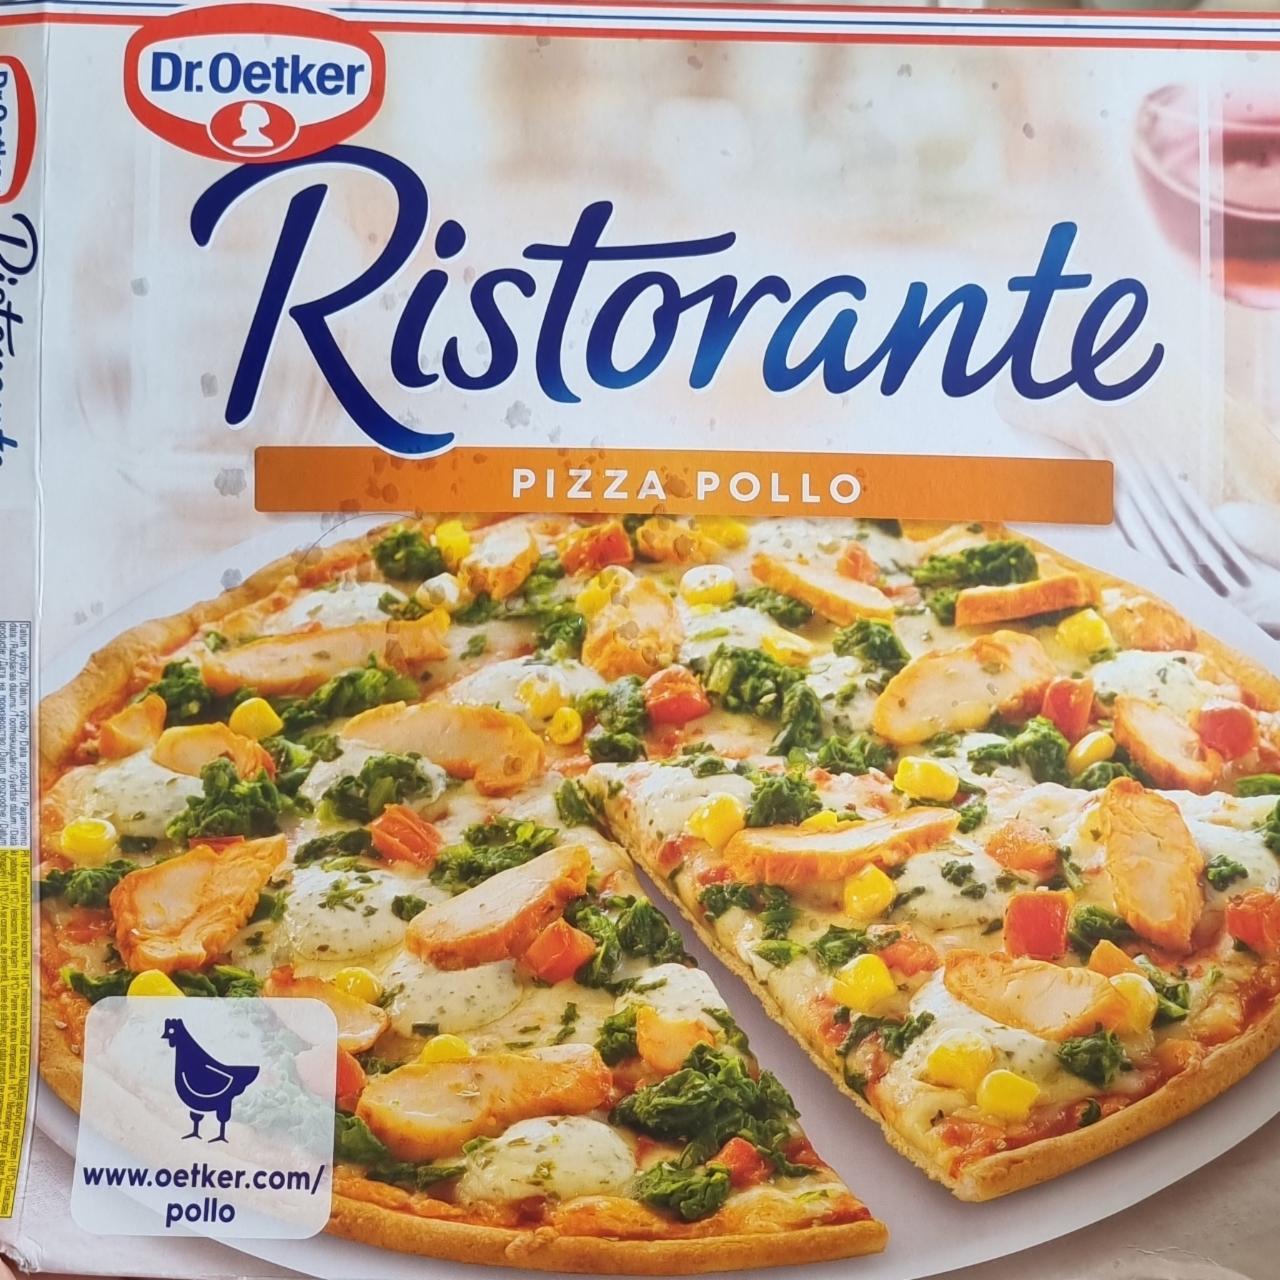 Fotografie - Ristorante pizza pollo Dr.Oetker